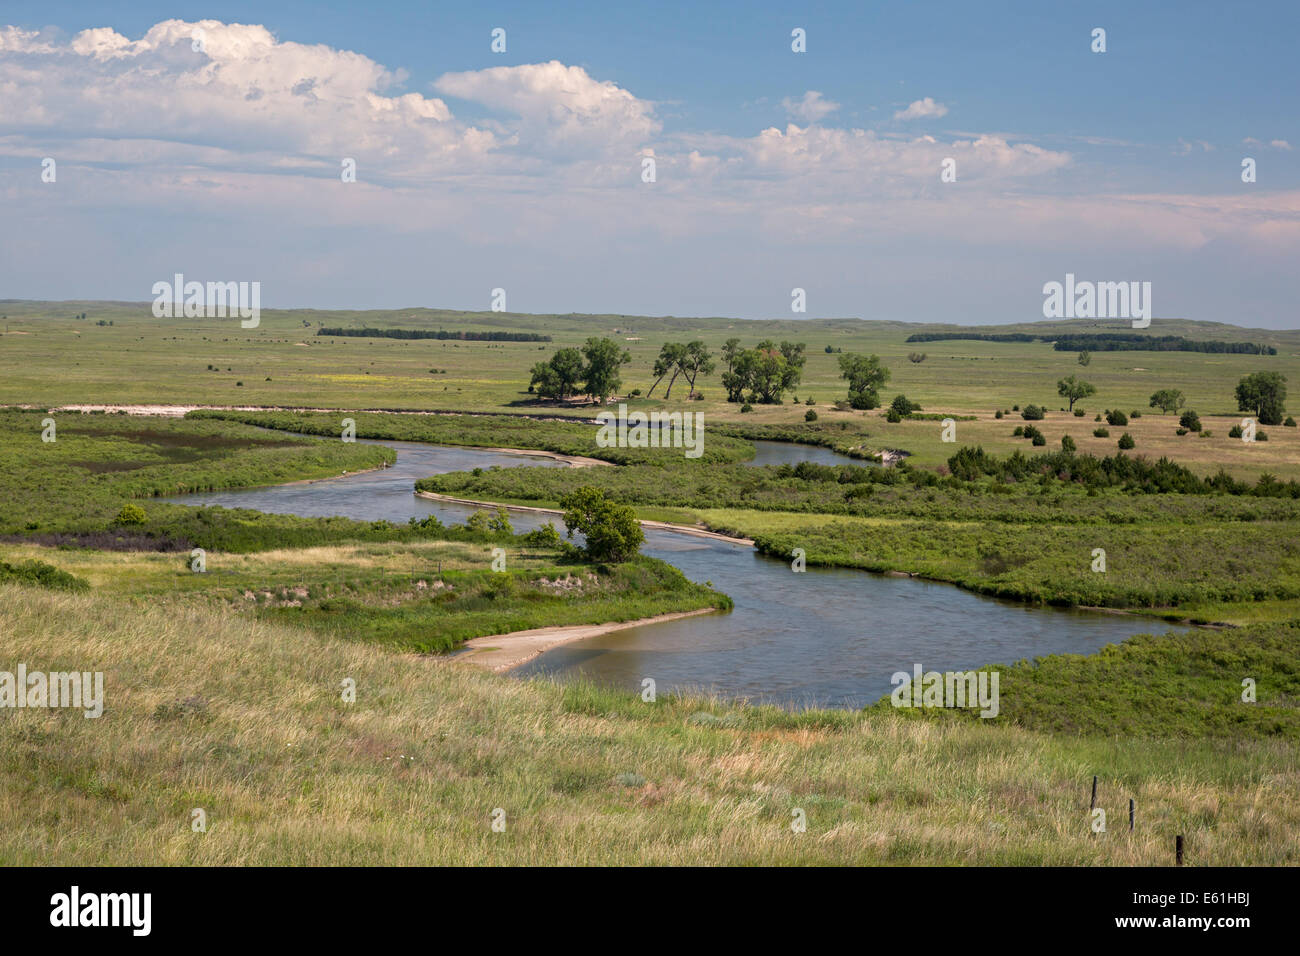 Brewster, Nebraska - The North Loup River in the Nebraska Sandhills. Stock Photo